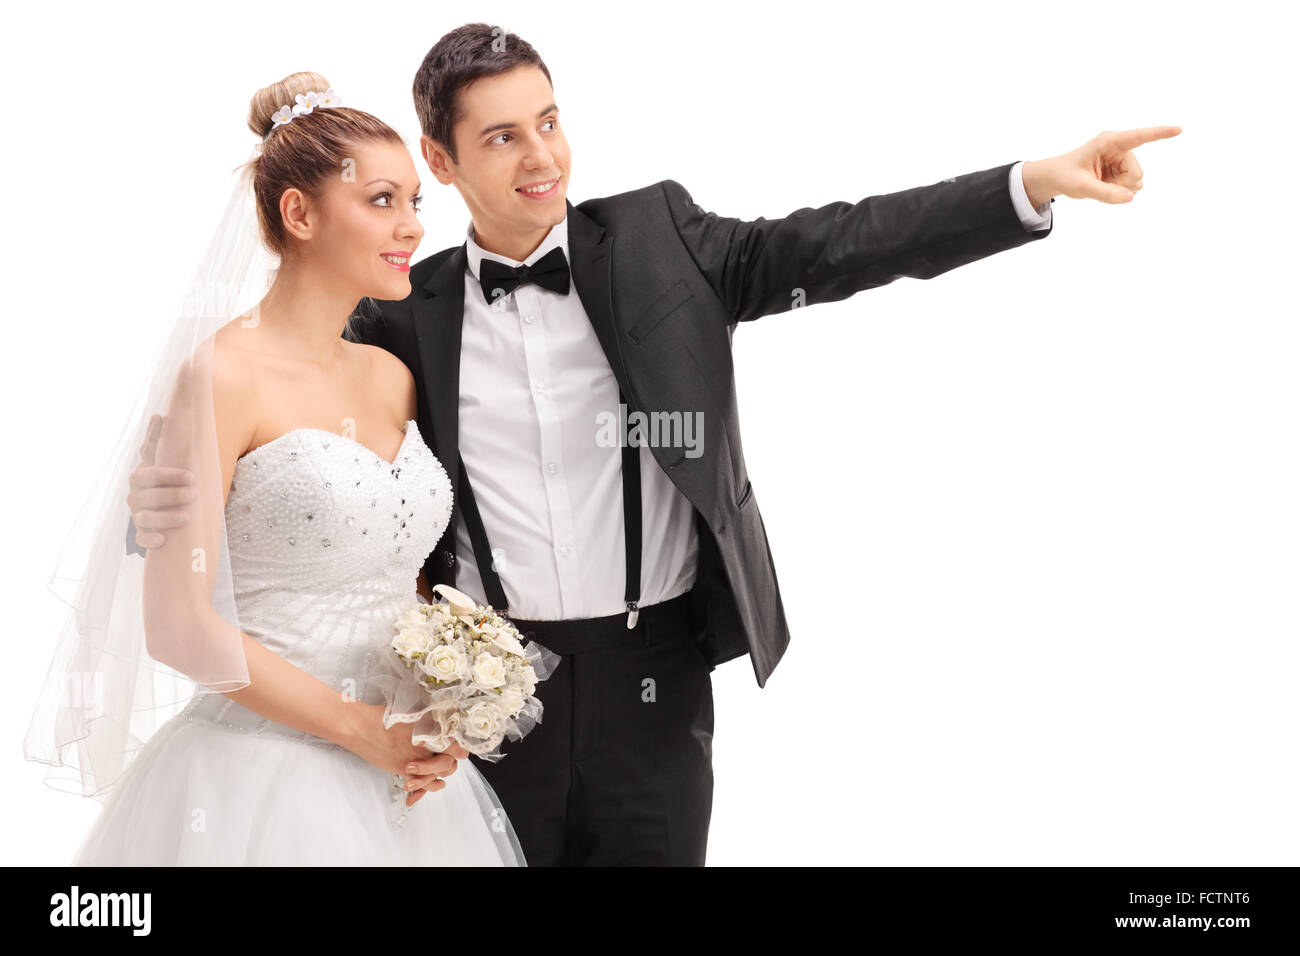 Les jeunes mariés montrant quelque chose à sa mariée et souriant isolé sur fond blanc Banque D'Images